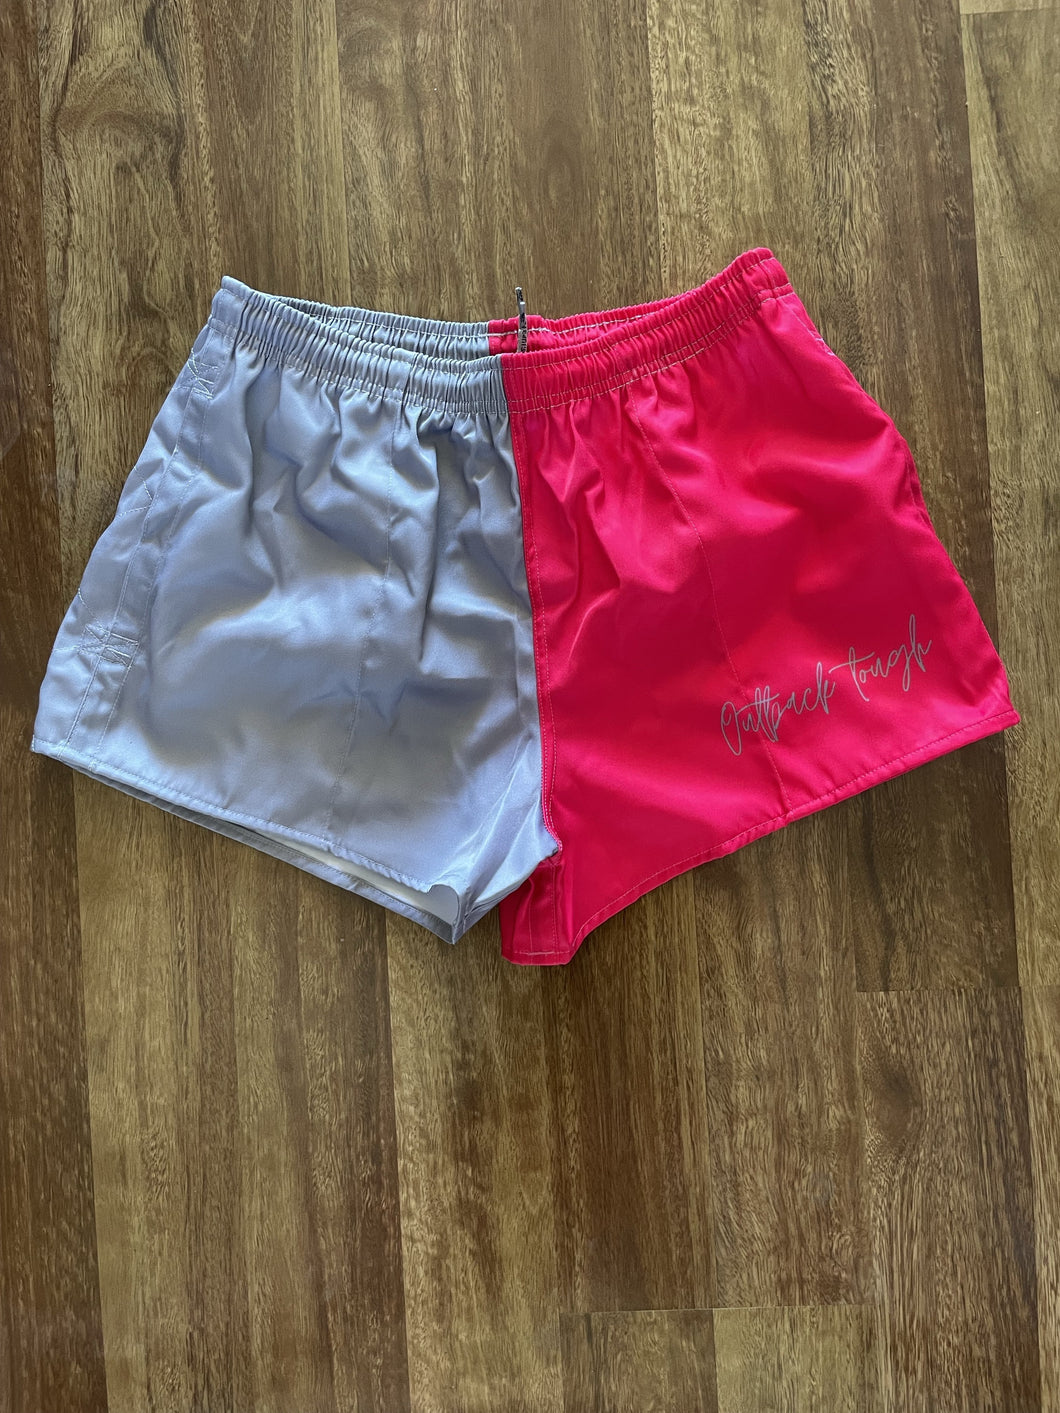 Hot Pink/Grey Footy Shorts | Kids